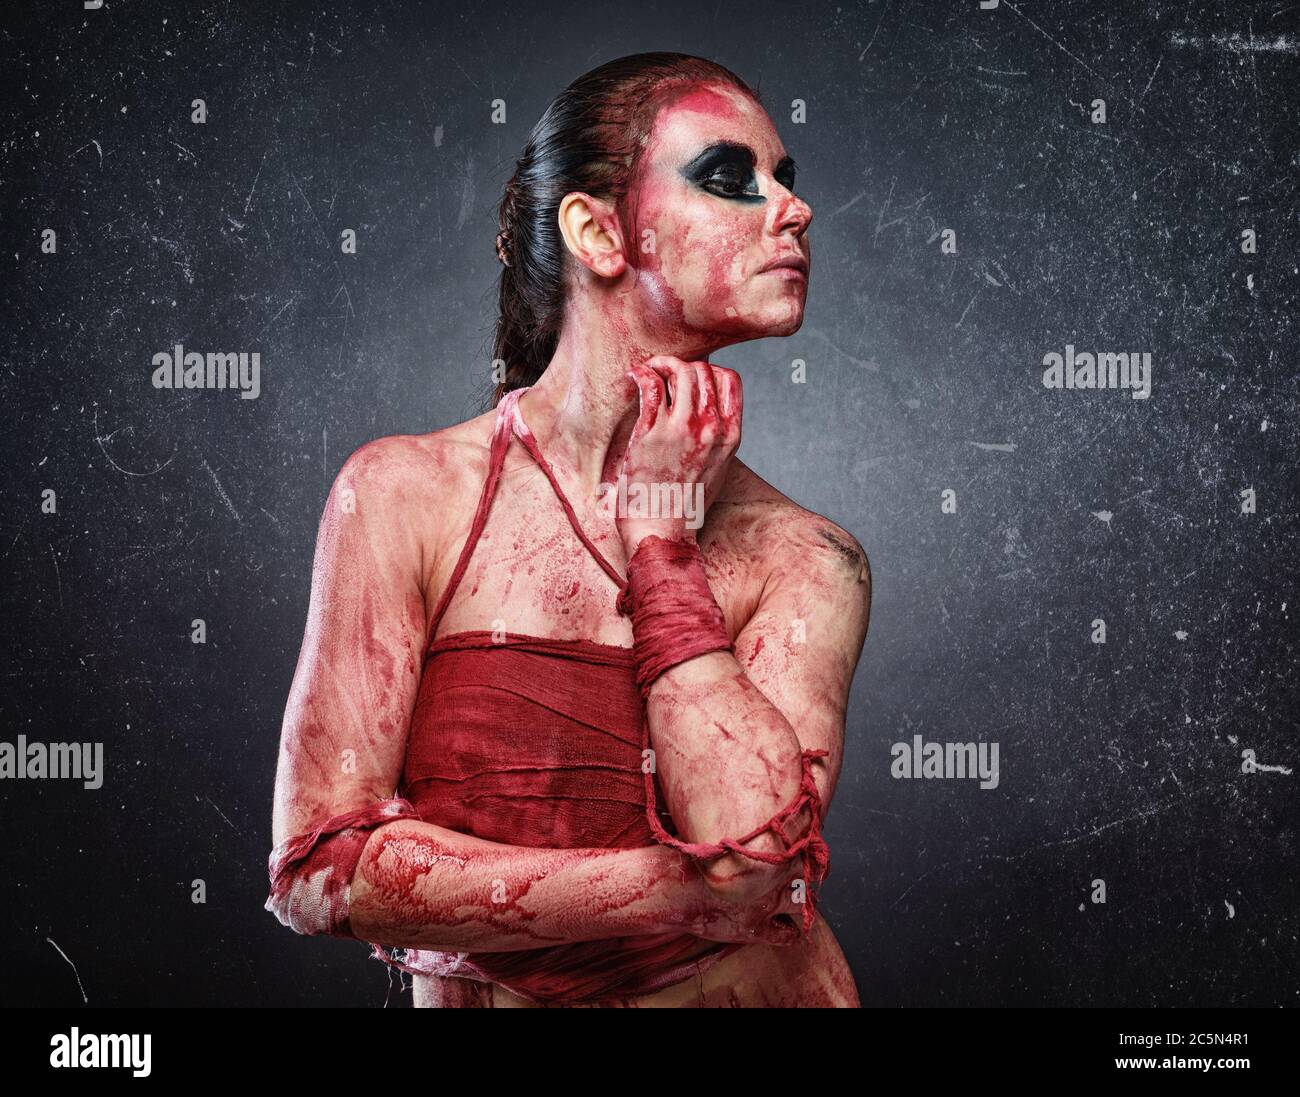 Horror Foto von jungen Frau in gefälschtem rotem Blut Stockfoto